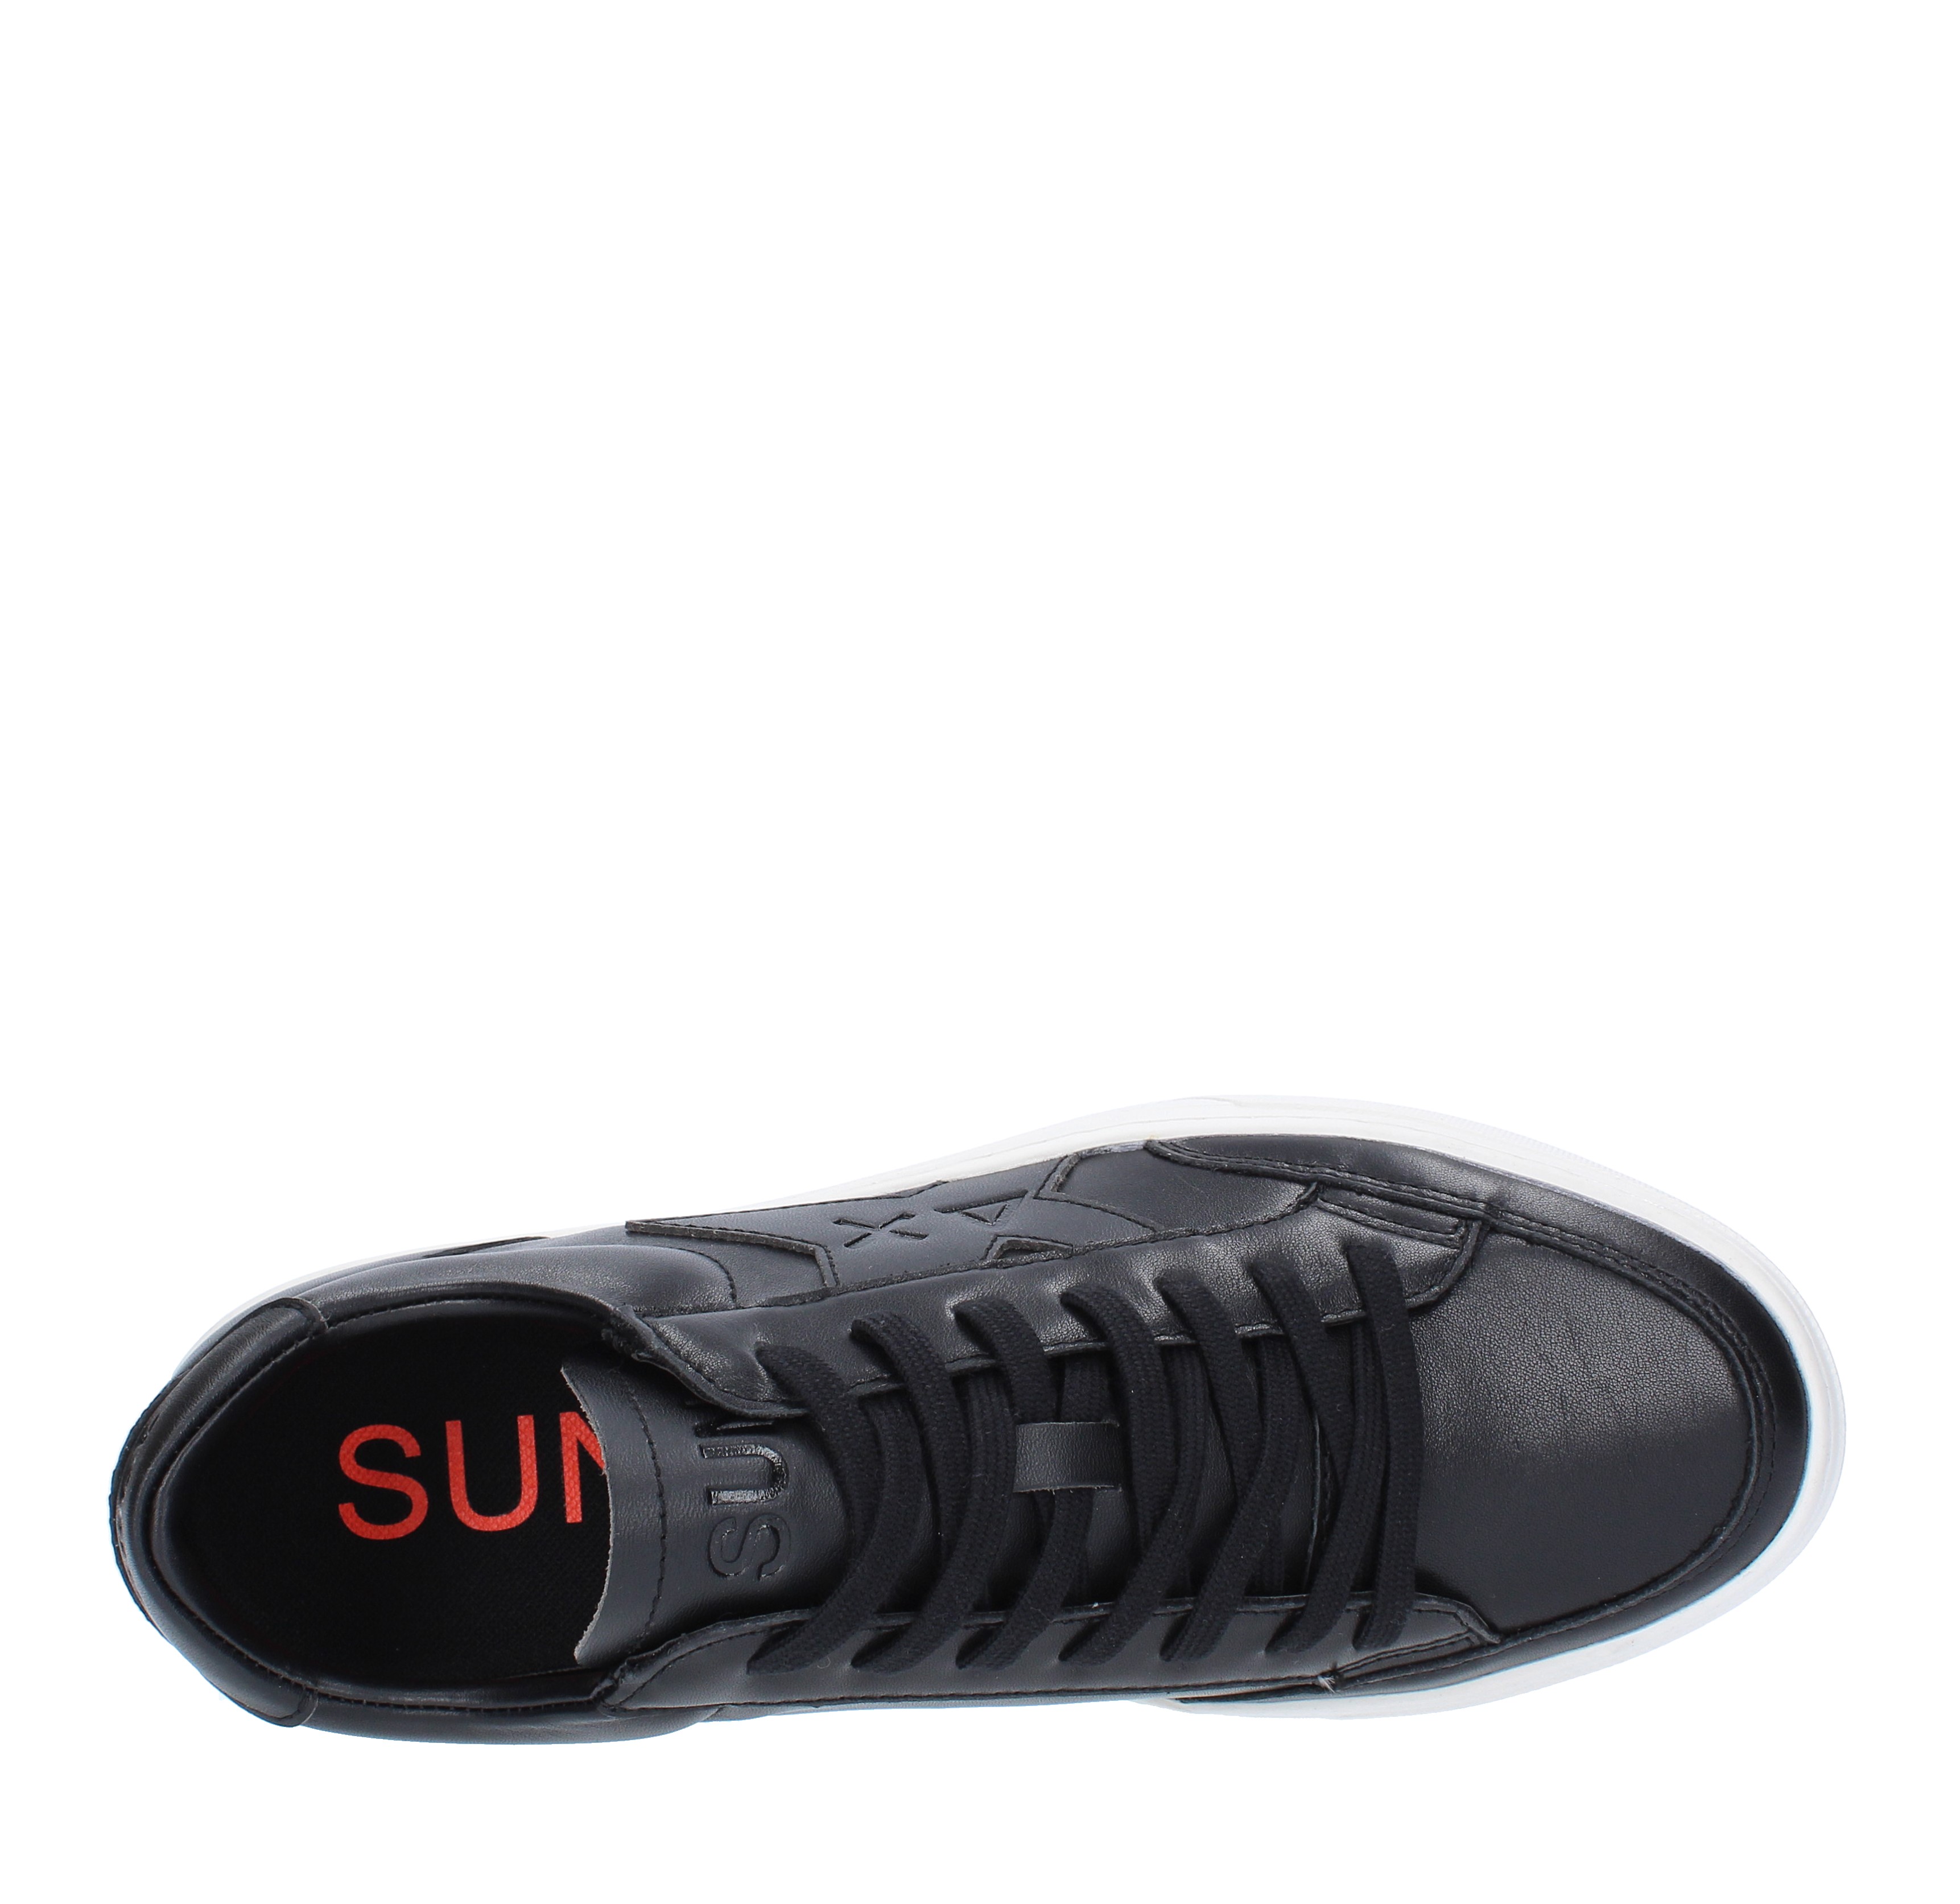 Sneakers in pelle SUN68 | Z4212511